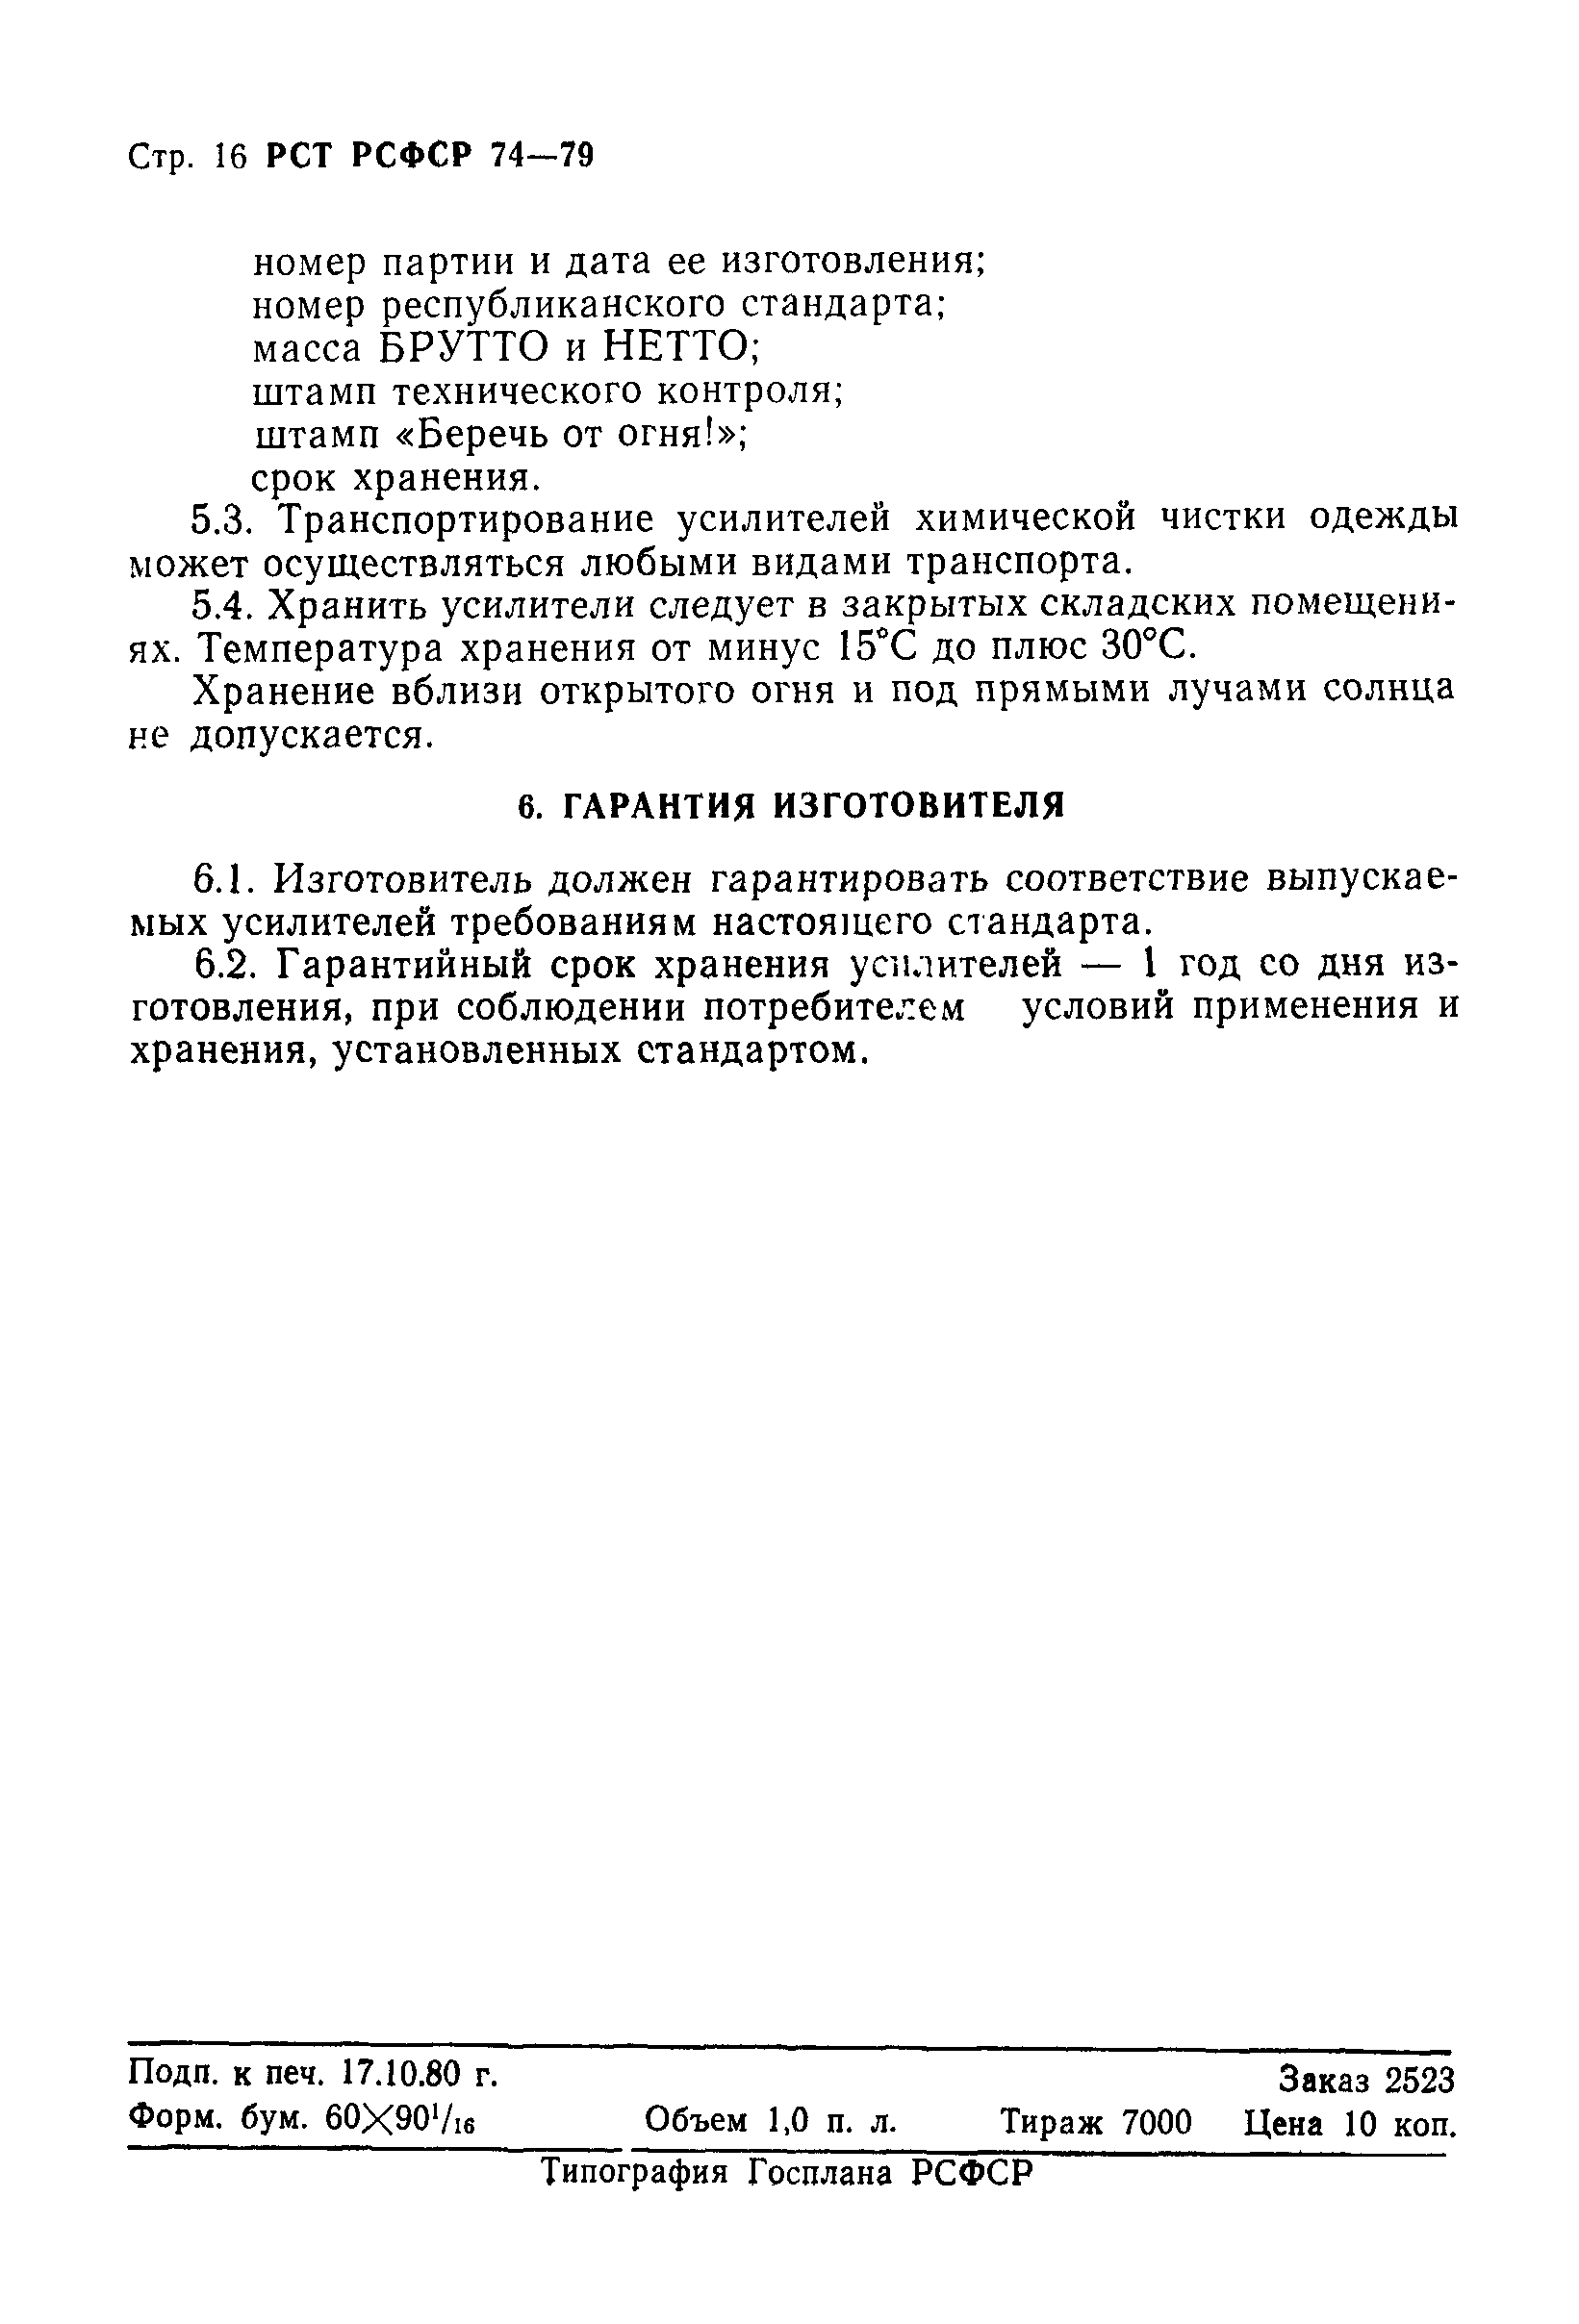 РСТ РСФСР 74-79